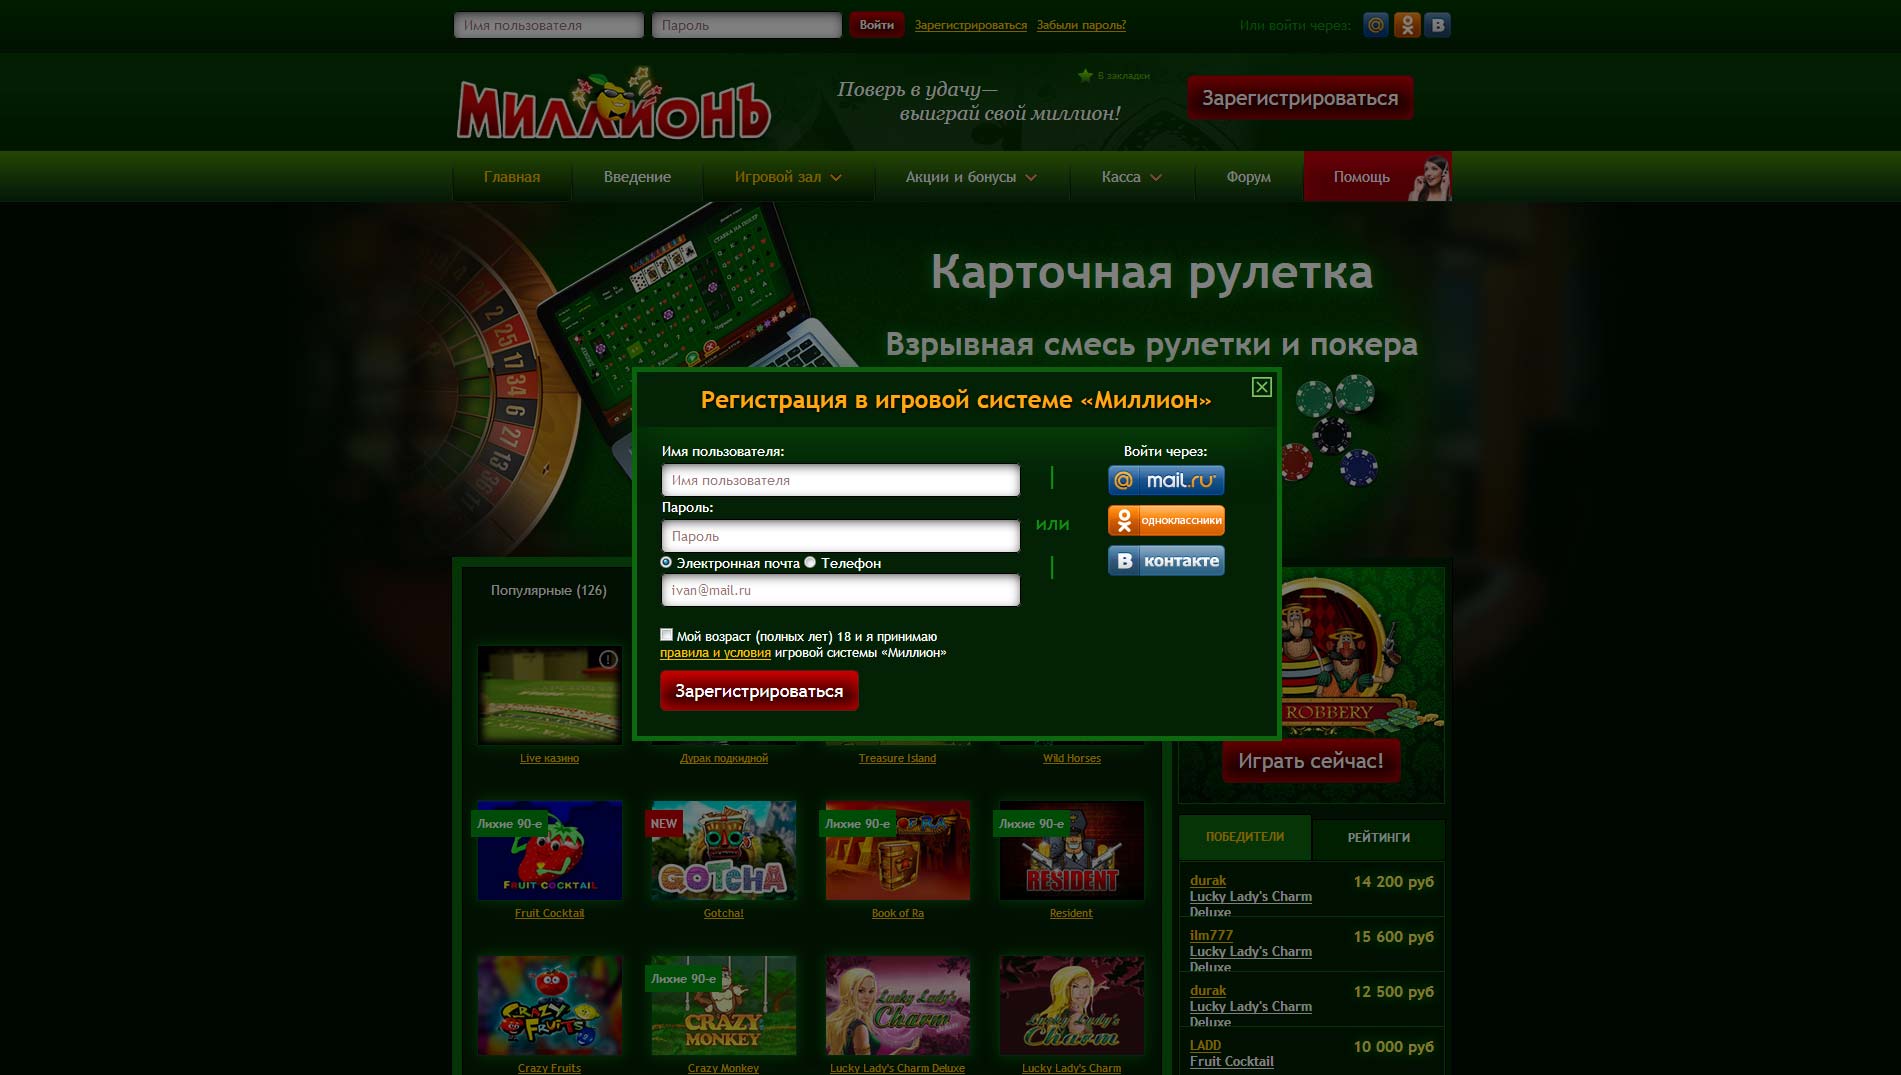 Новые онлайн казино 2019 с бездепозитным бонусом за регистрацию игровые автоматы играть бесплатно онлайн новоматик